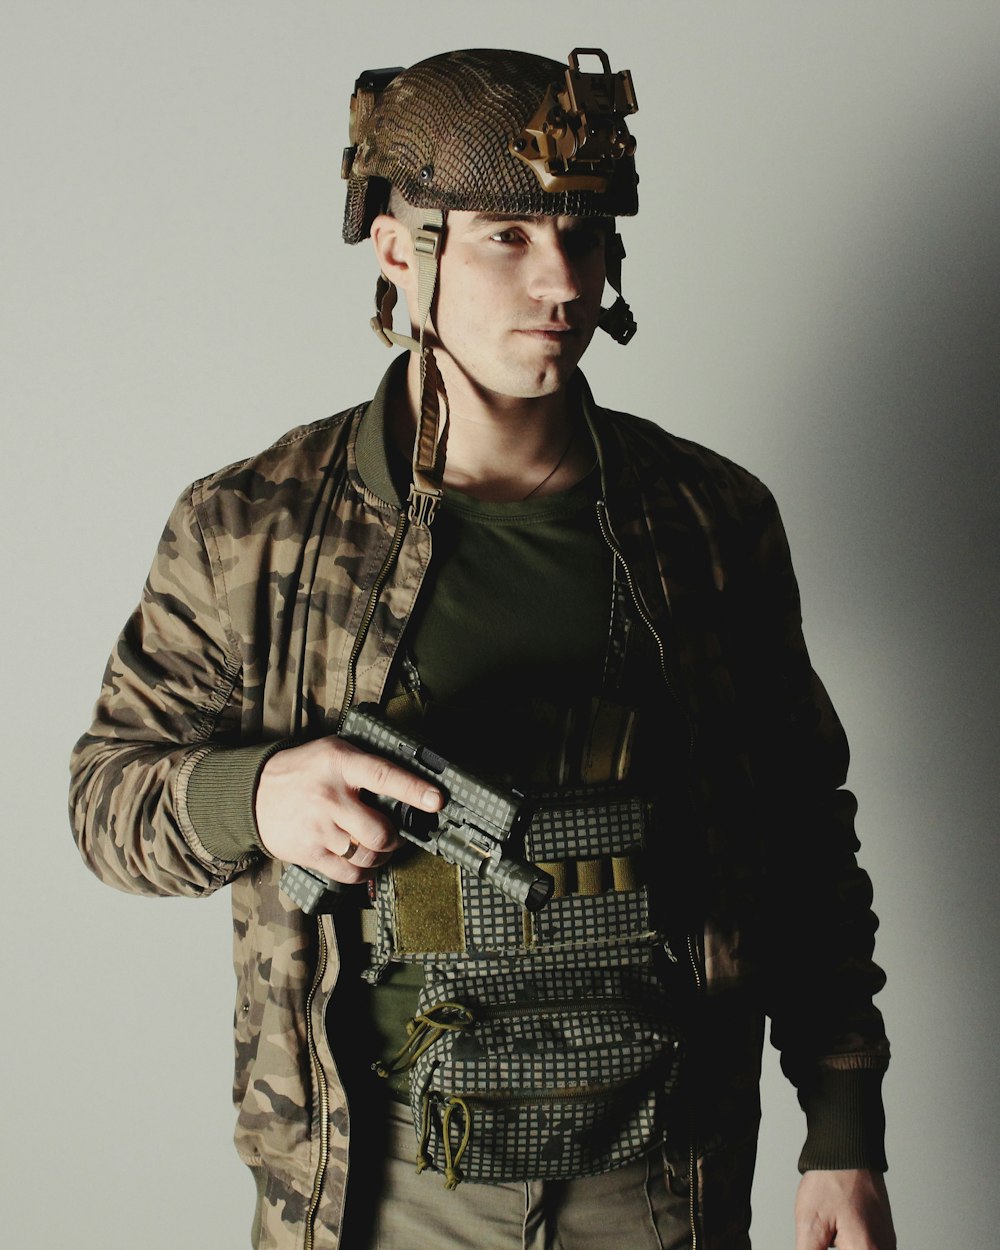 a man in a military uniform holding a gun